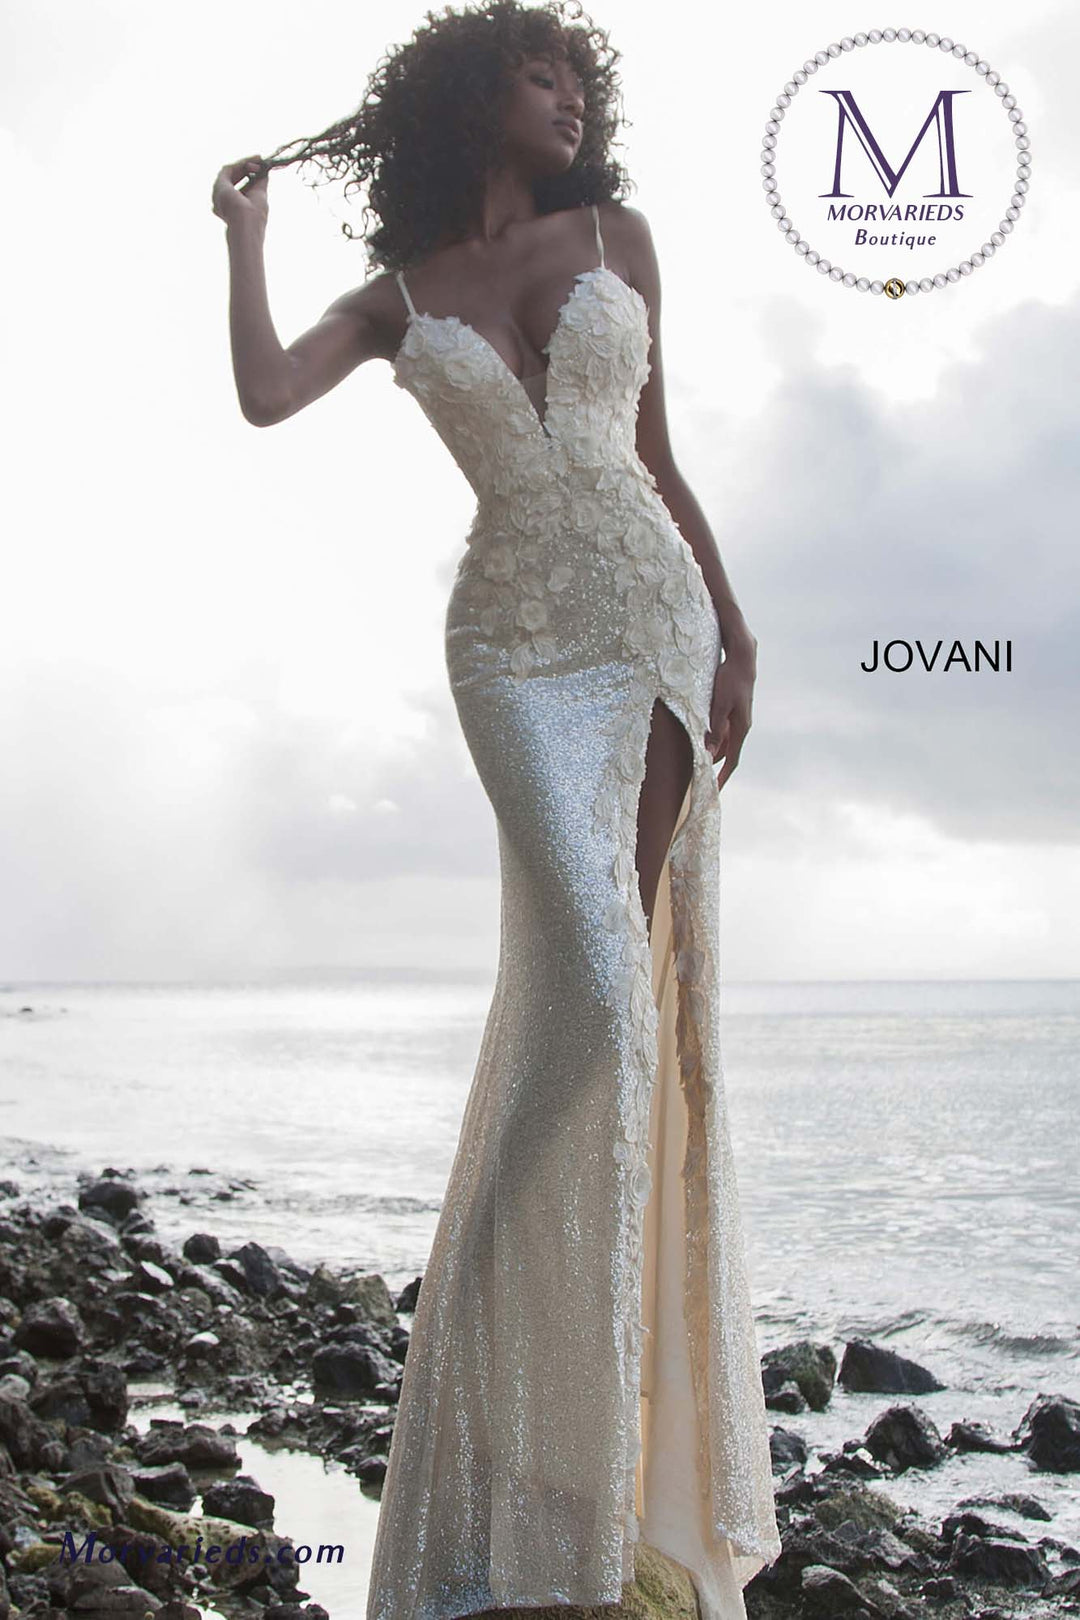 Backless Prom Dress | Floral Appliques Dress Jovani 1012 - Morvarieds Fashion